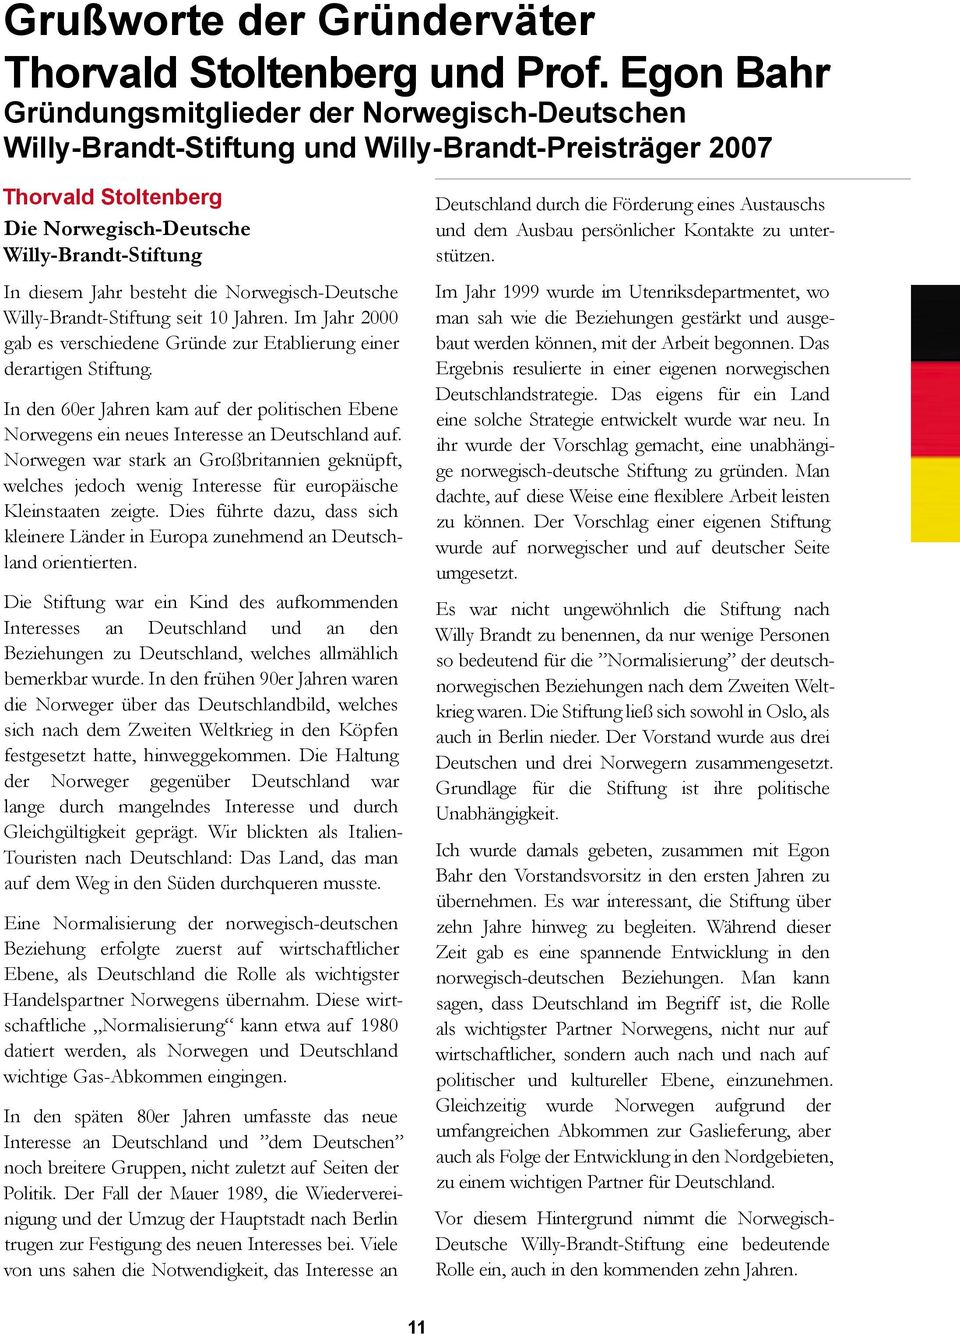 besteht die Norwegisch-Deutsche Willy-Brandt-Stiftung seit 10 Jahren. Im Jahr 2000 gab es verschiedene Gründe zur Etablierung einer derartigen Stiftung.